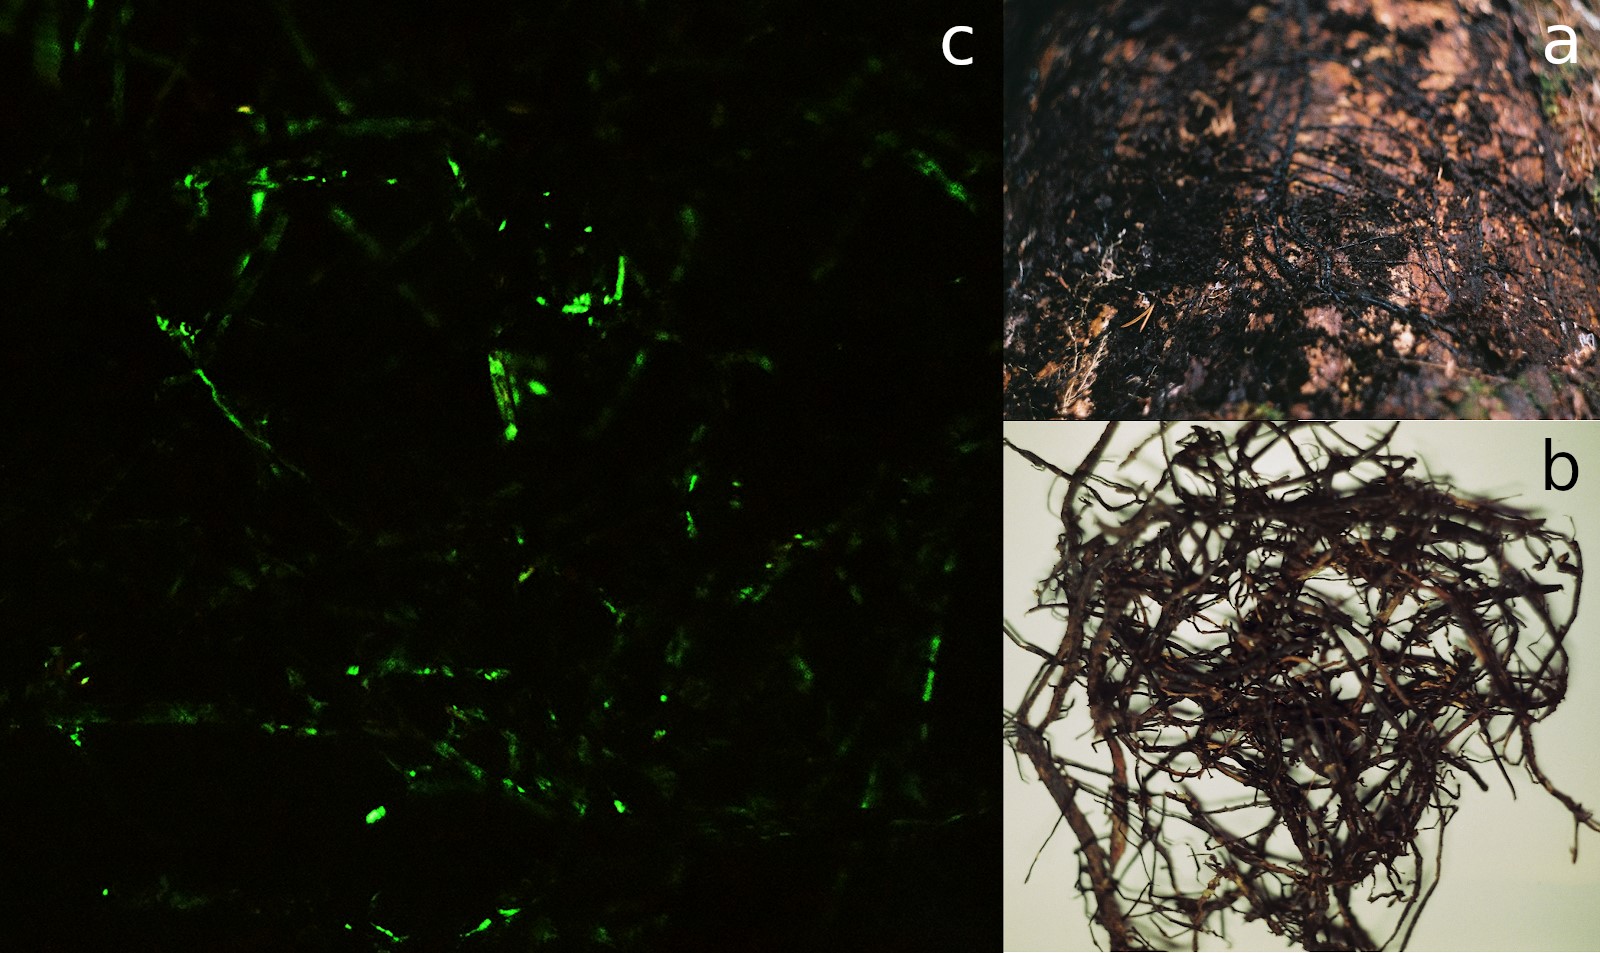 Fotod: Külmaseene risomorfid: a) kasvamas surnud püütüvel, puukoor on eemaldatud;  b) risomorfide pundar tavavalguses; c) pimedas, bioluminestsents